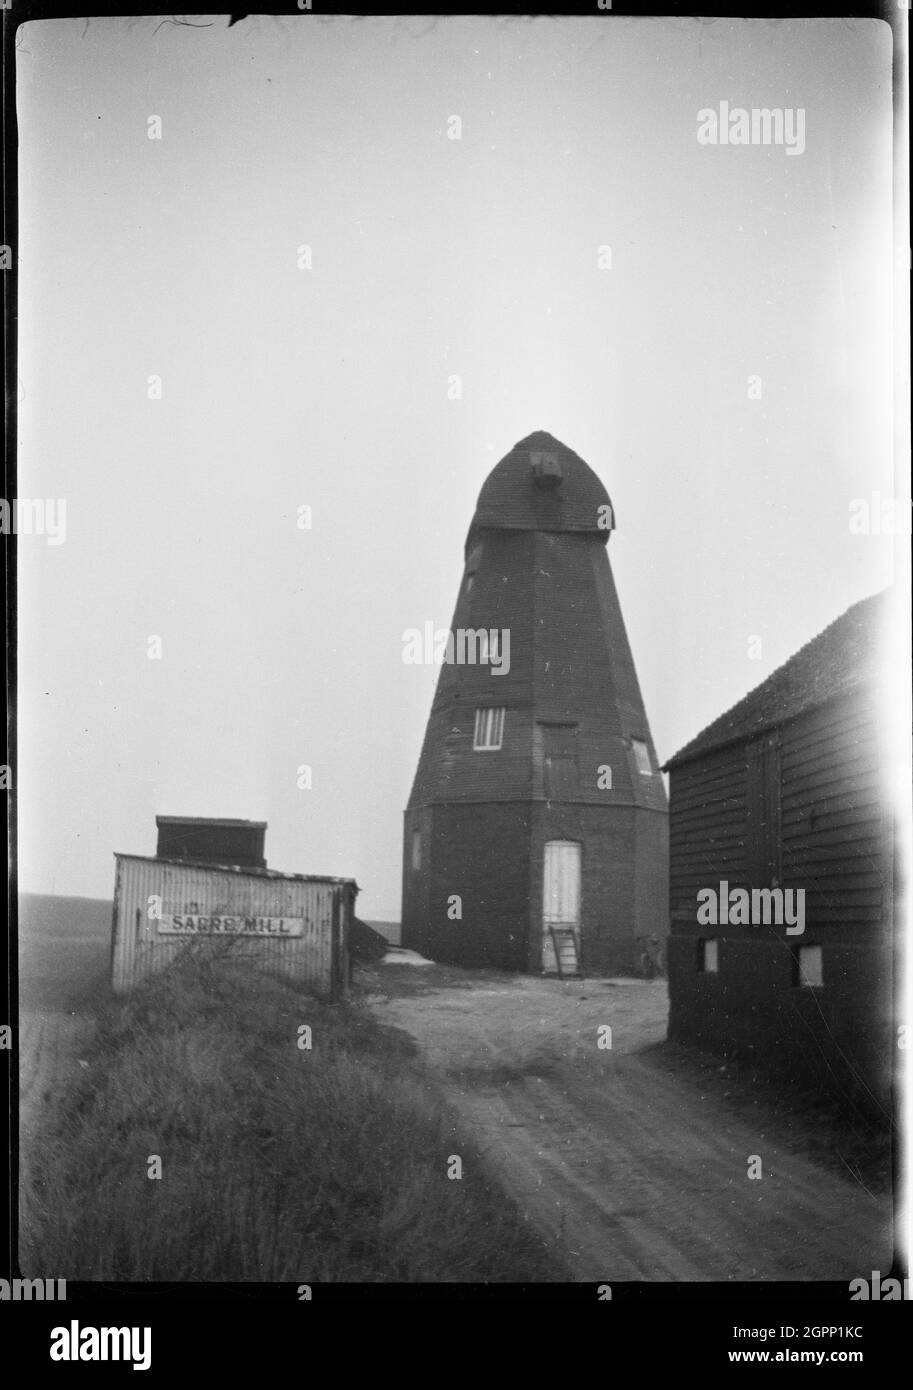 Sarre Windmill, Canterbury Road, Sarre, Thanet, Kent, 1929 veduta del mulino a vento di Sarre, che mostra il mulino a fumo senza le sue vele. Sarre Windmill è stato costruito nel 1820 per la macinazione del mais. Cessò di lavorare con il vento nel 1922 e si fermò nel 1940, ma fu poi restaurato e rimesso in funzione nel 1992. Foto Stock